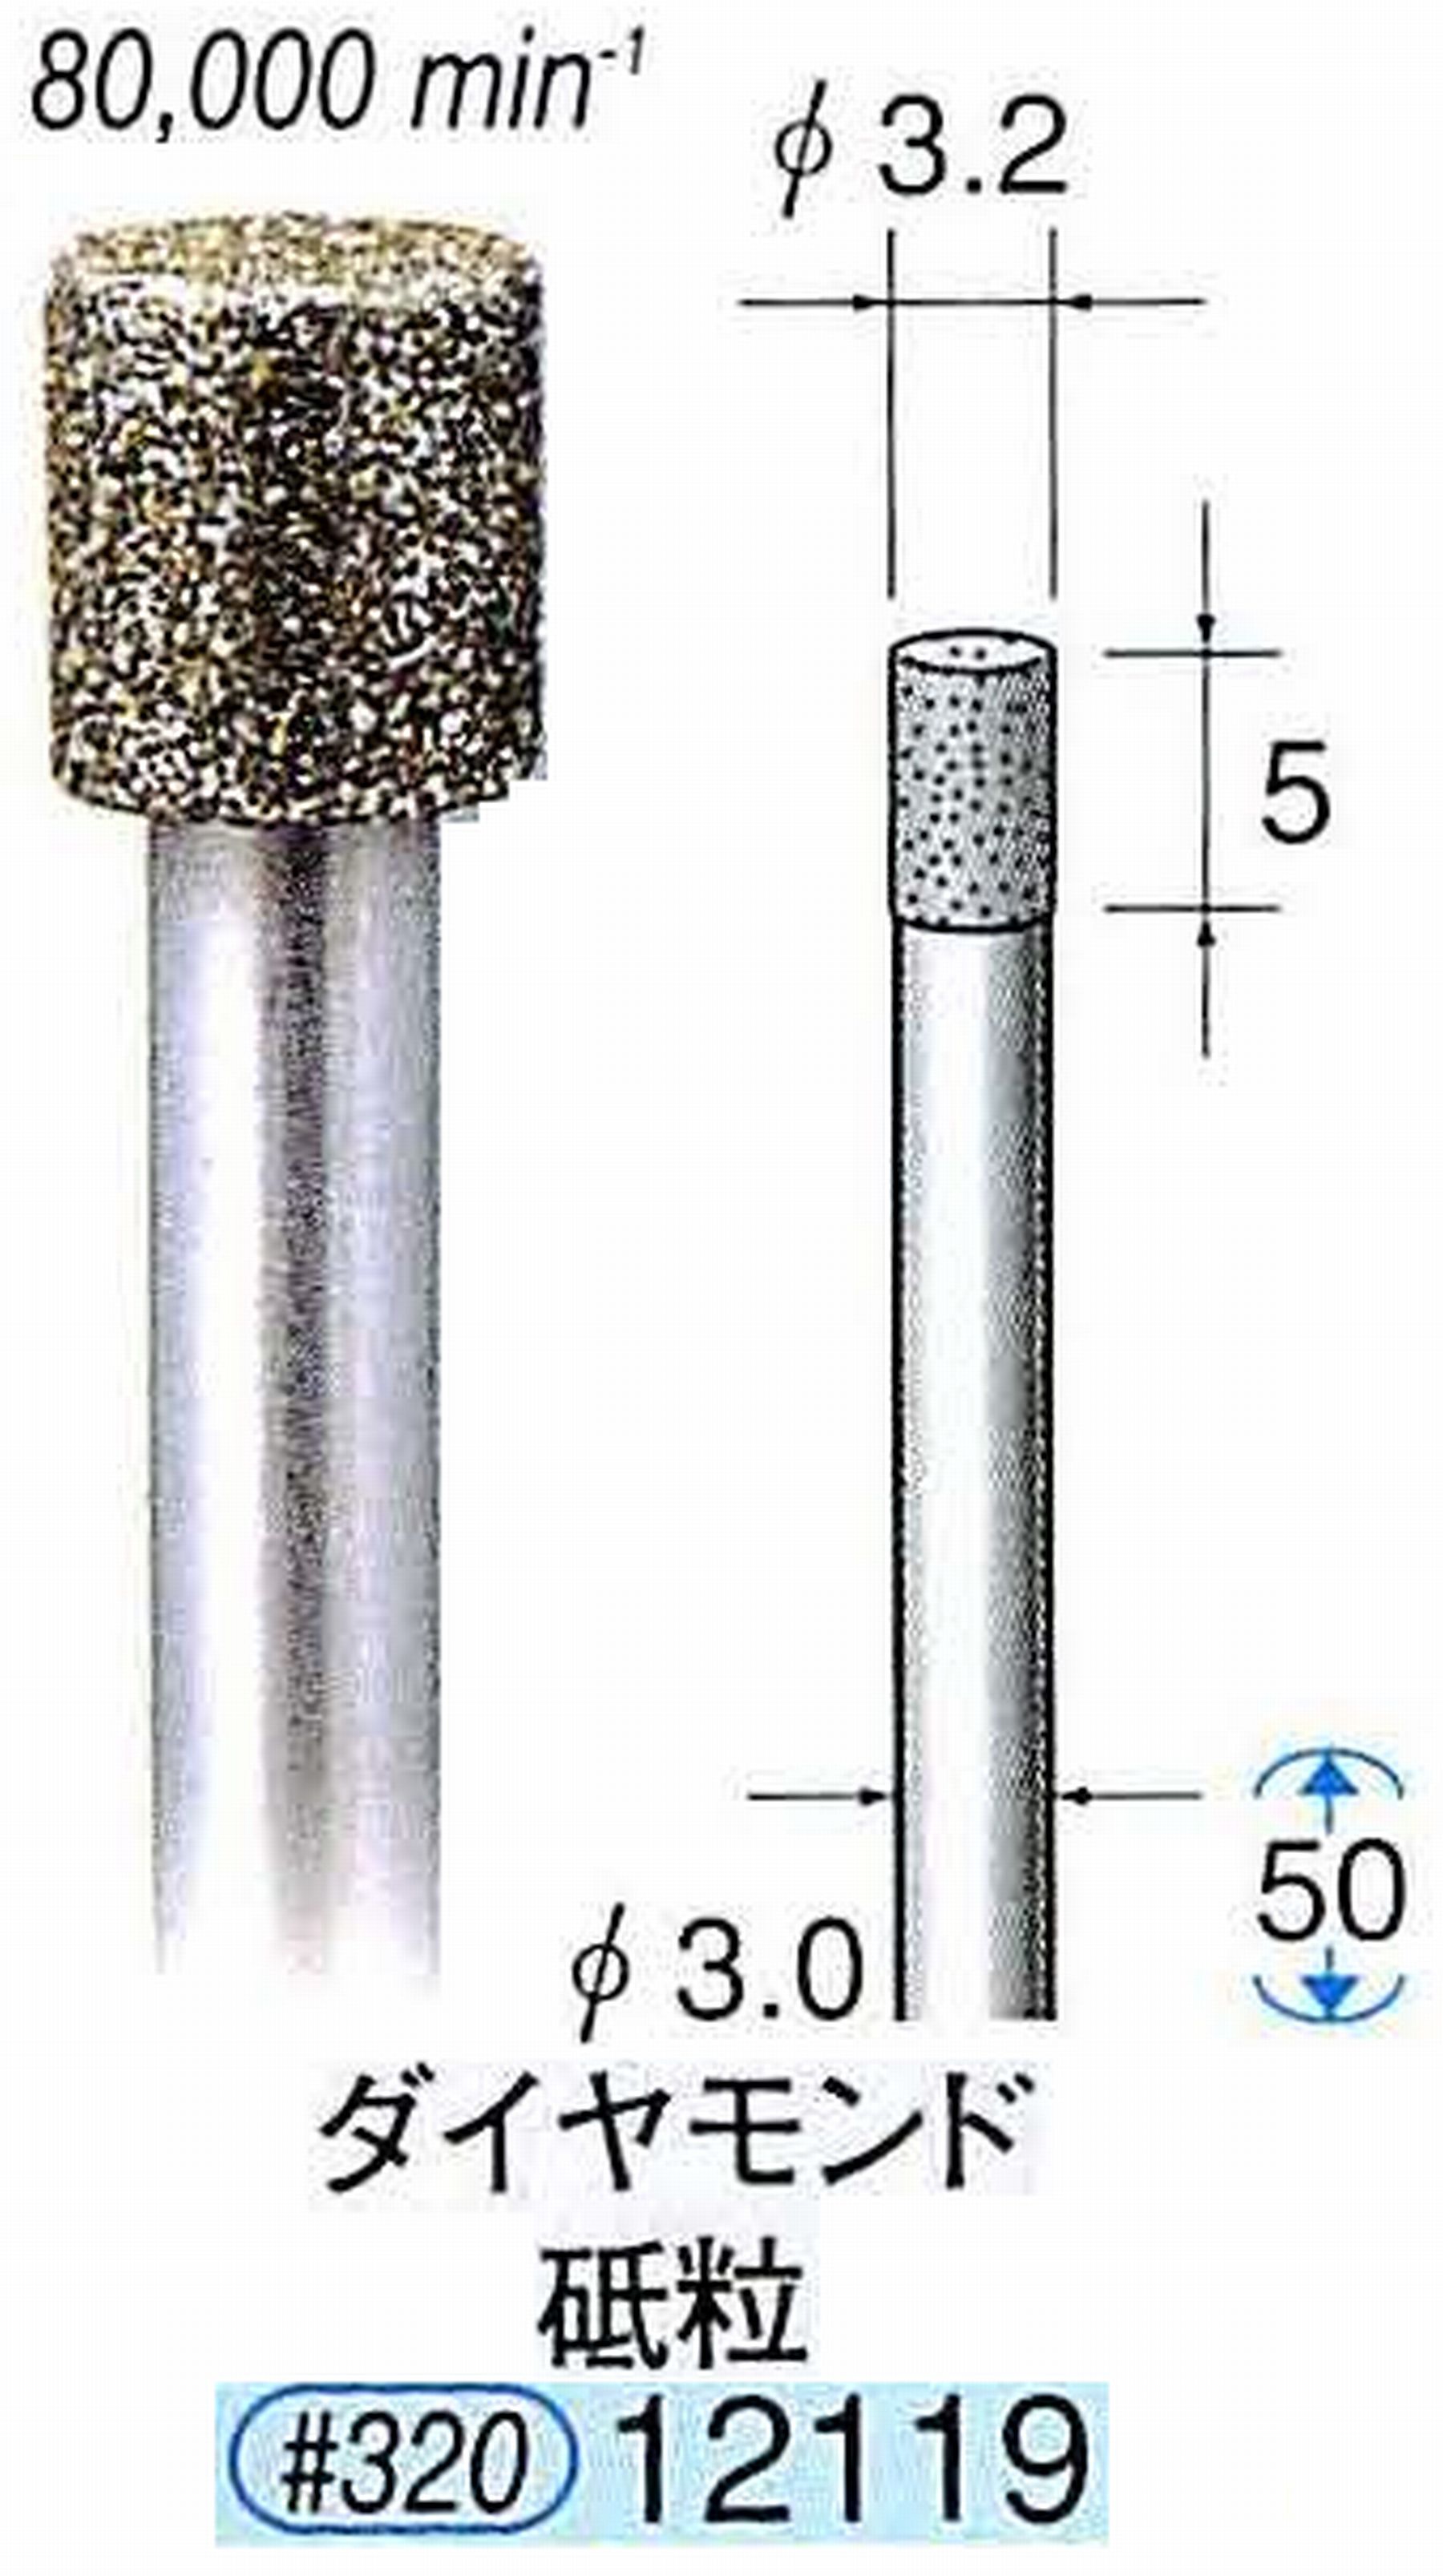 ナカニシ/NAKANISHI 電着ダイヤモンド ダイヤモンド砥粒 軸径(シャンク)φ3.0mm 12119